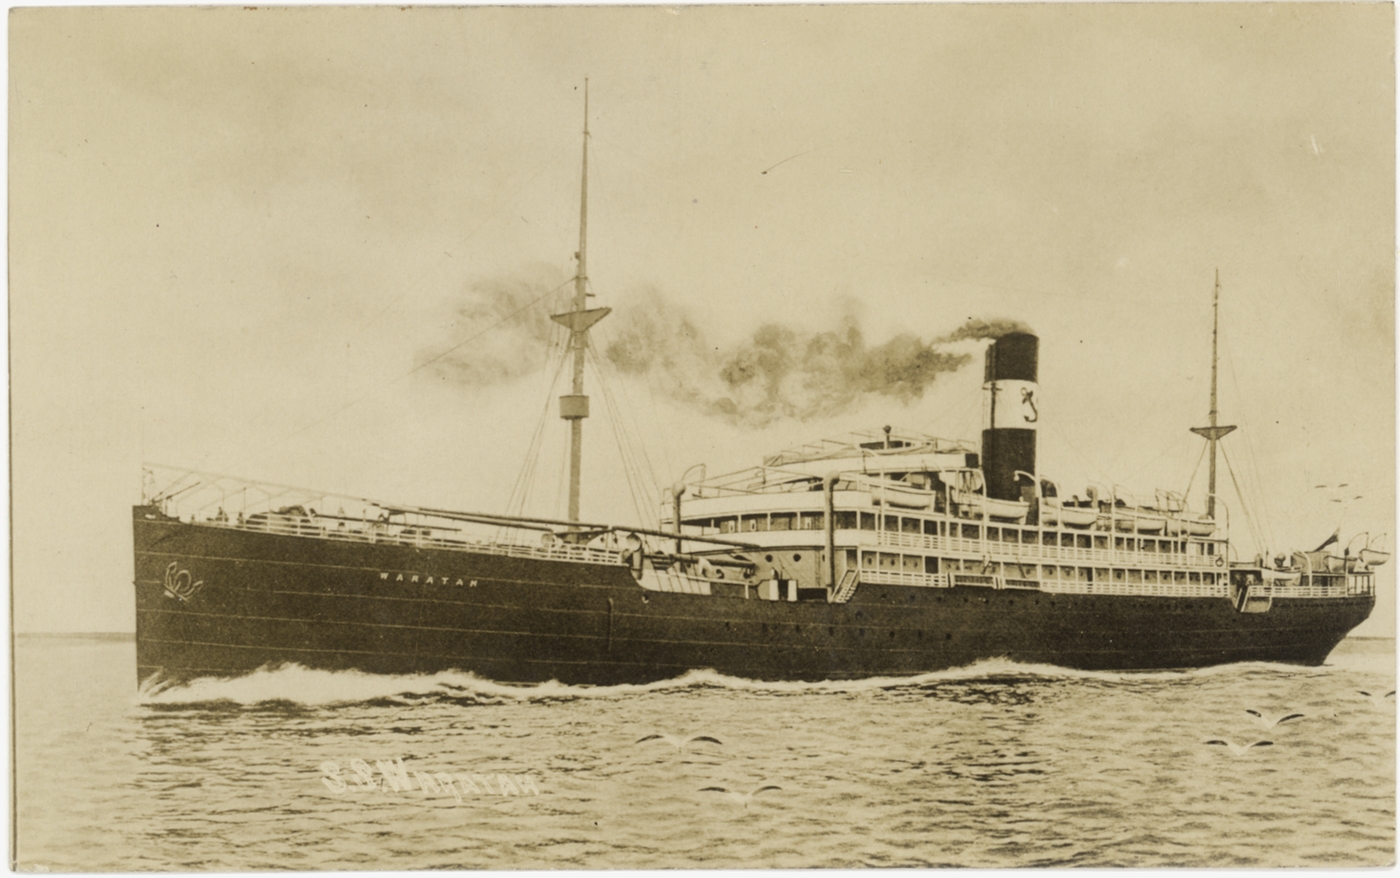 Het passagiersschip Waratah zou geen ziel hebben gehad. En verdween op een reis van Australië naar Zuid-Afrika spoorloos.